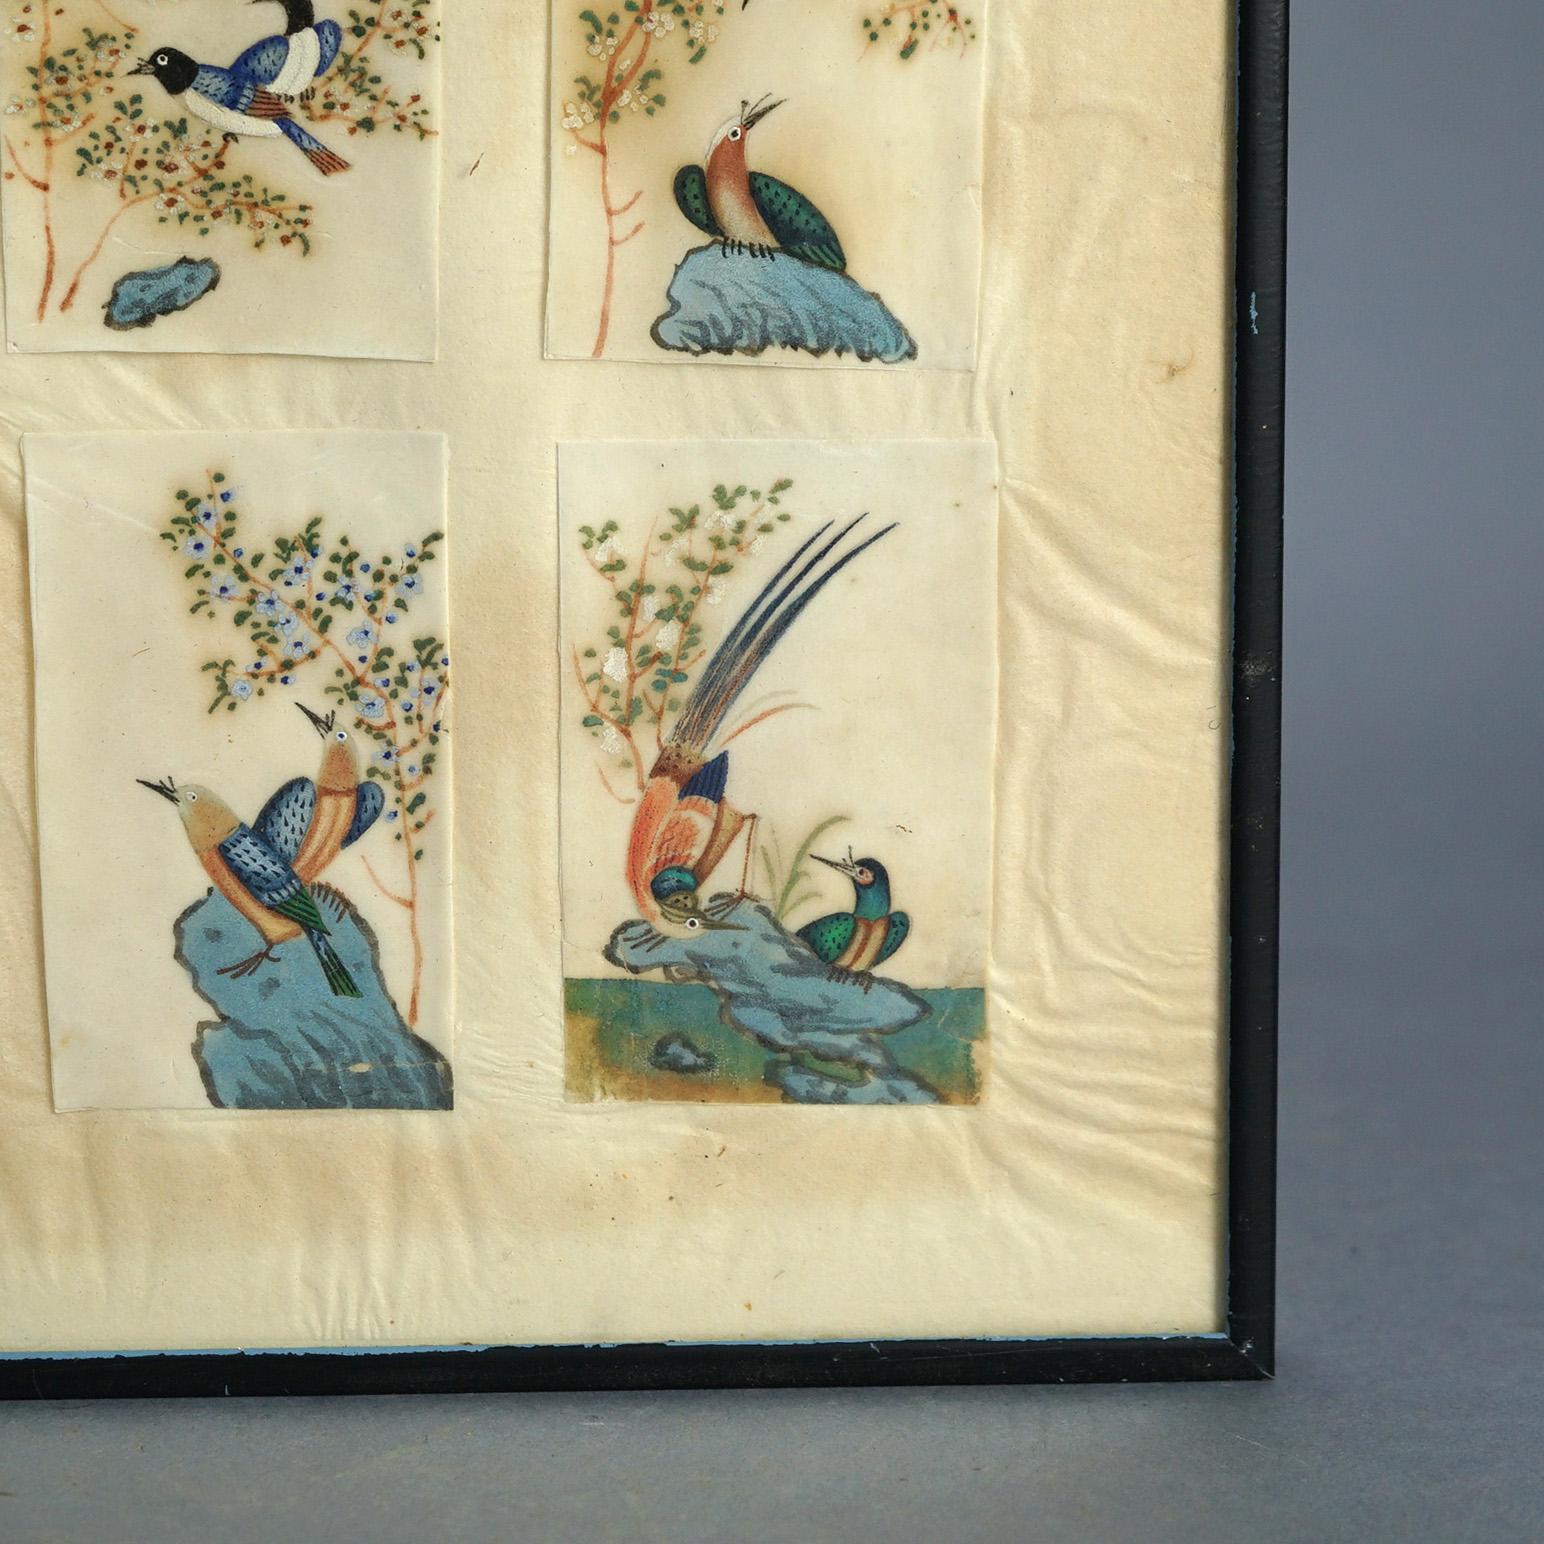 Antike chinesische Vogel Studie Aquarell Gemälde auf Papier C1920

Maße - 15,25 